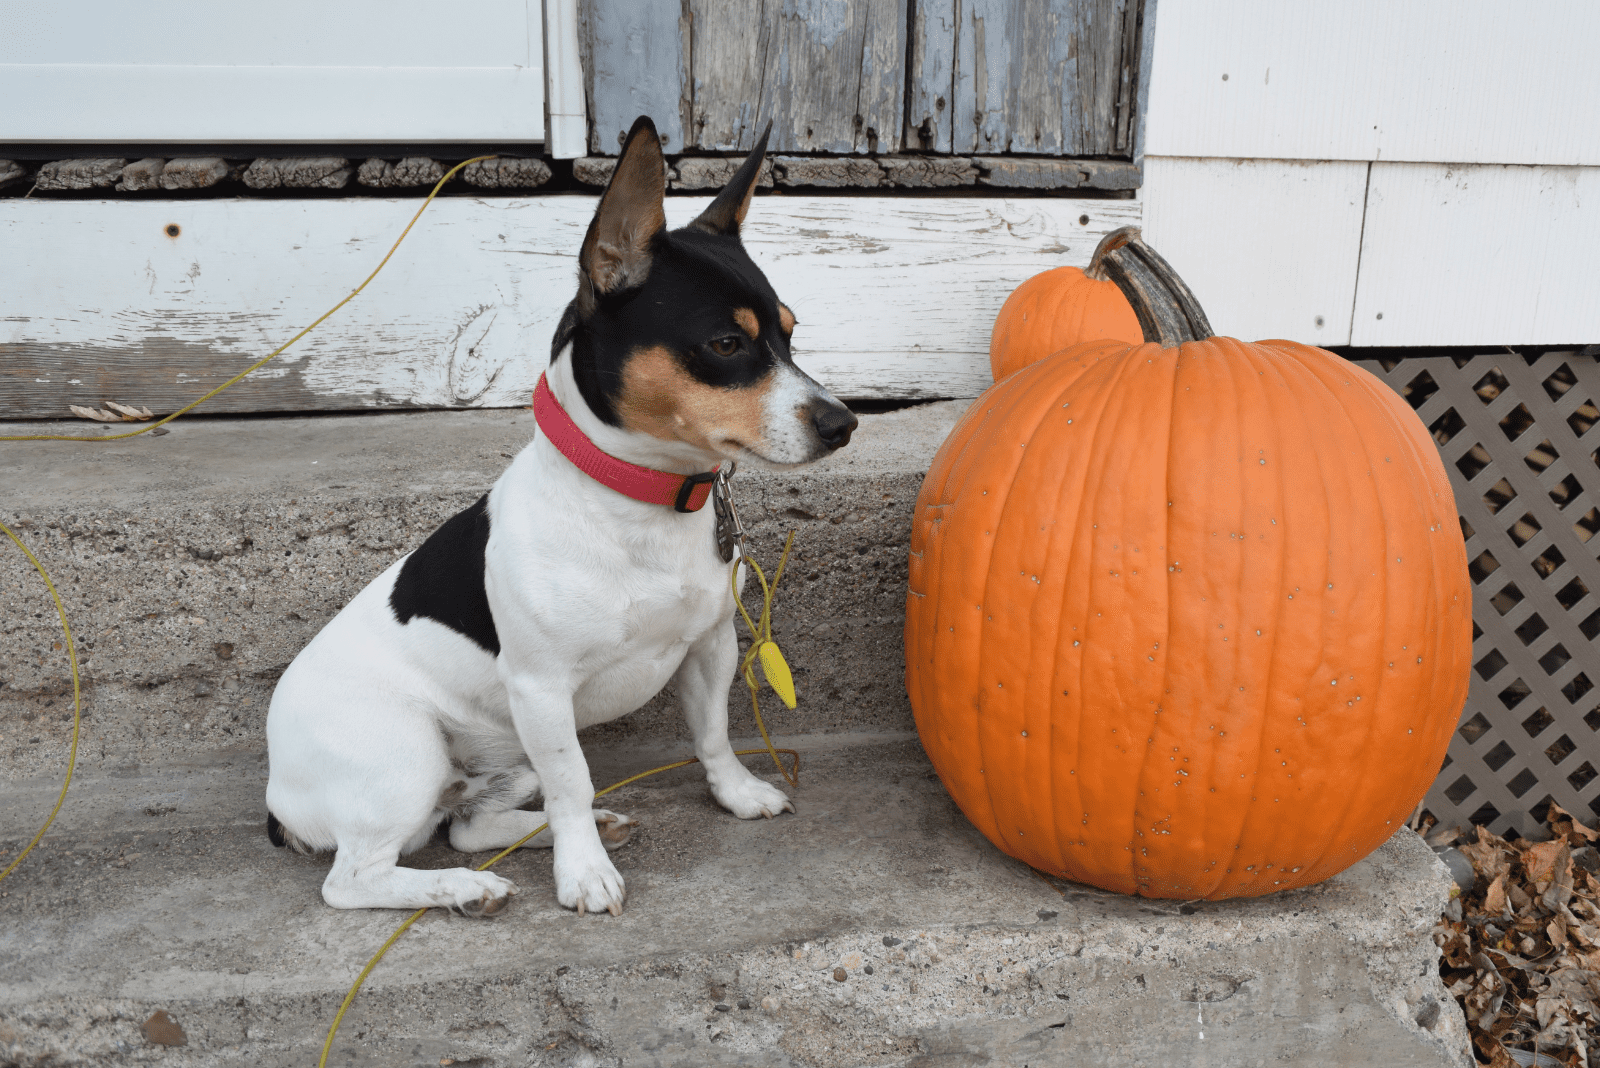 A rat terrier sits next to a pumpkin